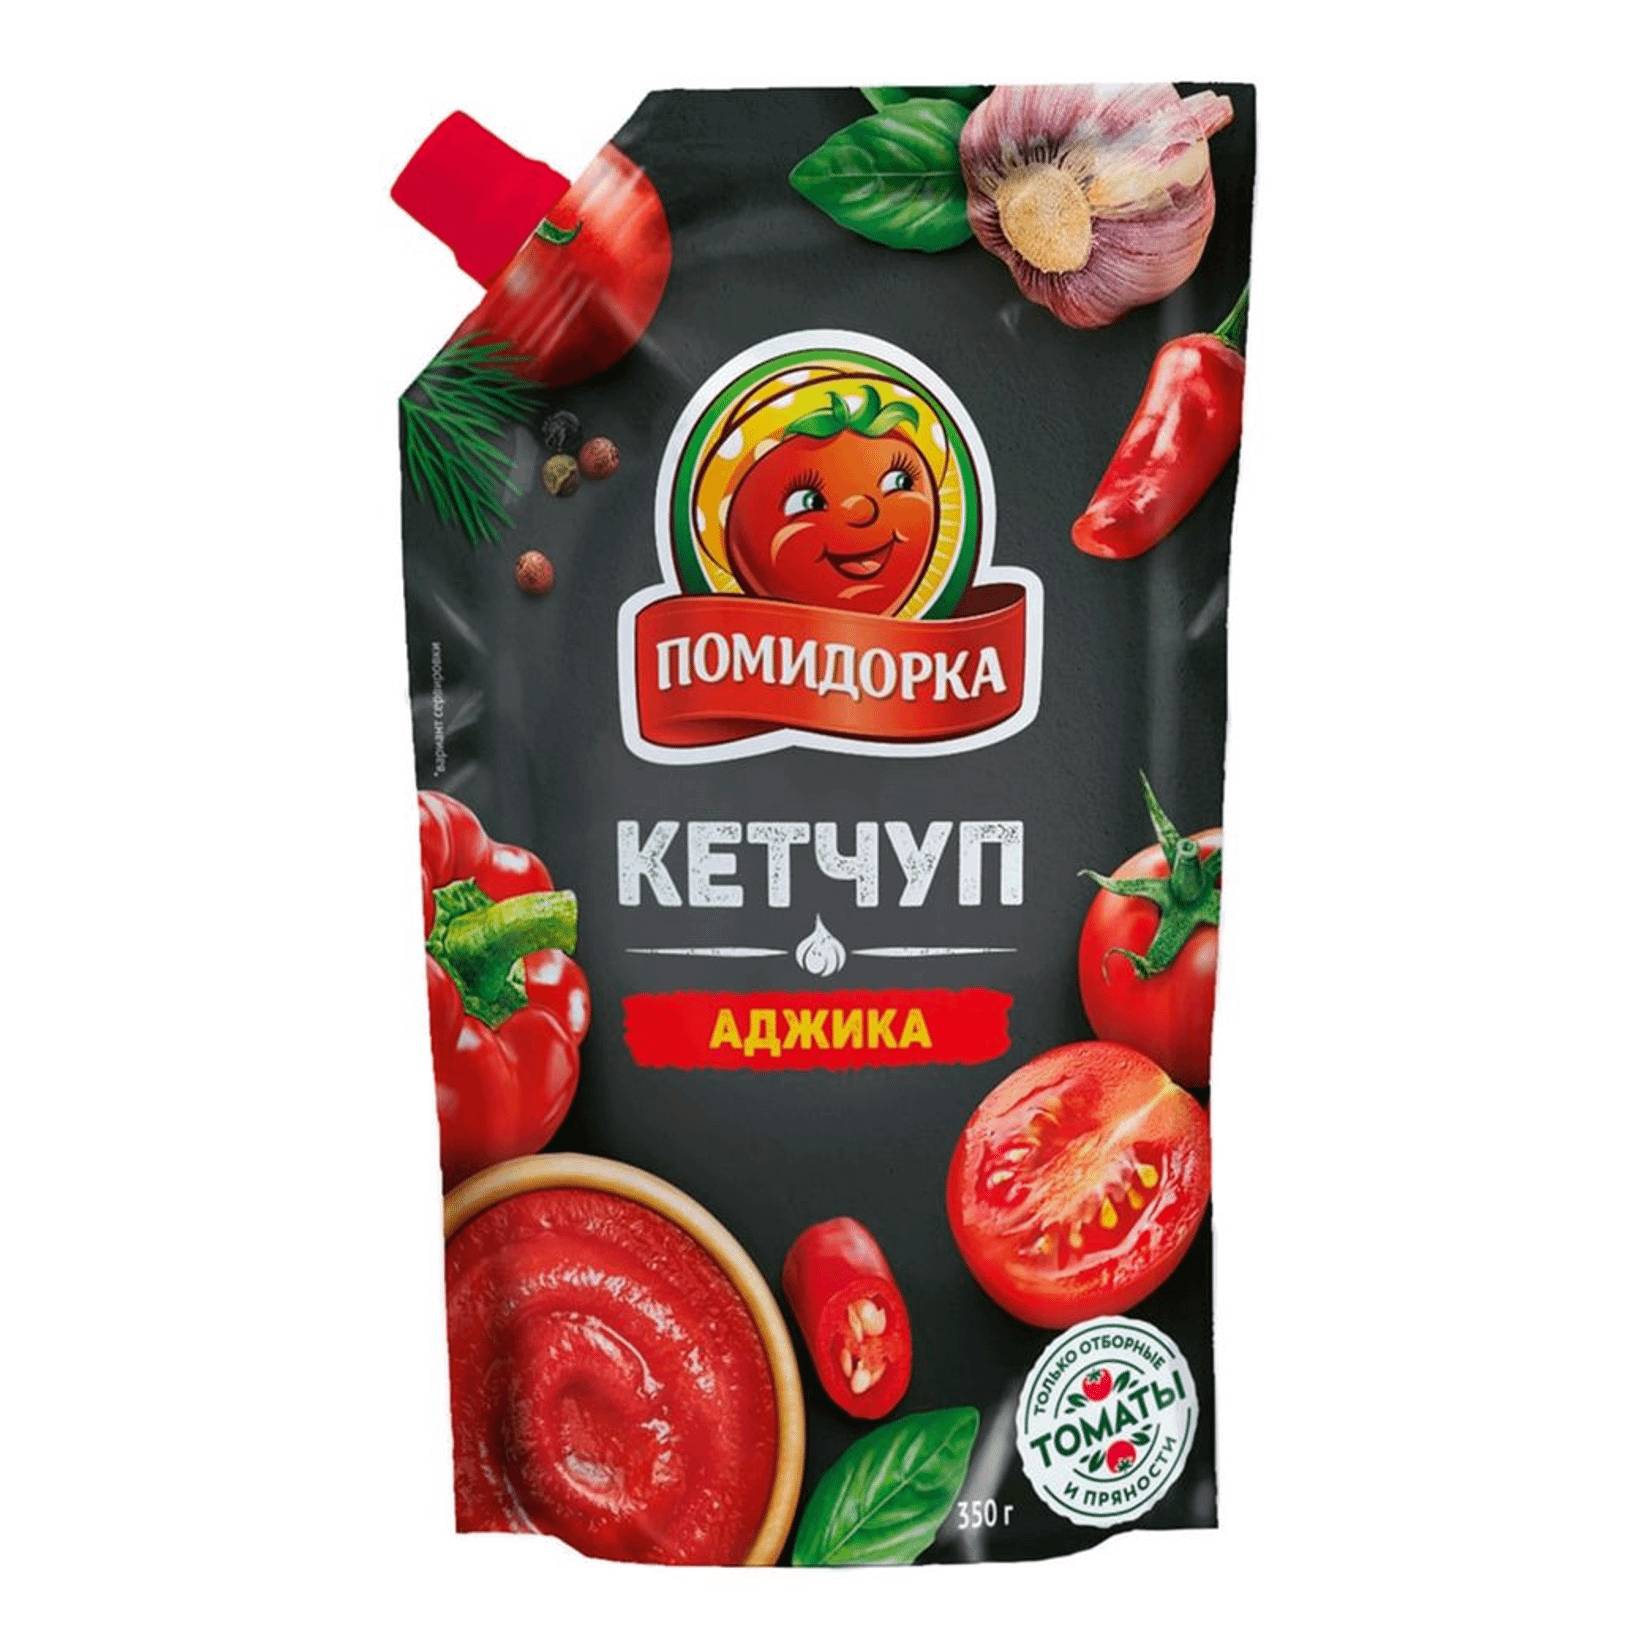 Кетчуп Помидорка Аджика, 350 г кетчуп томатный помидорка 350 г